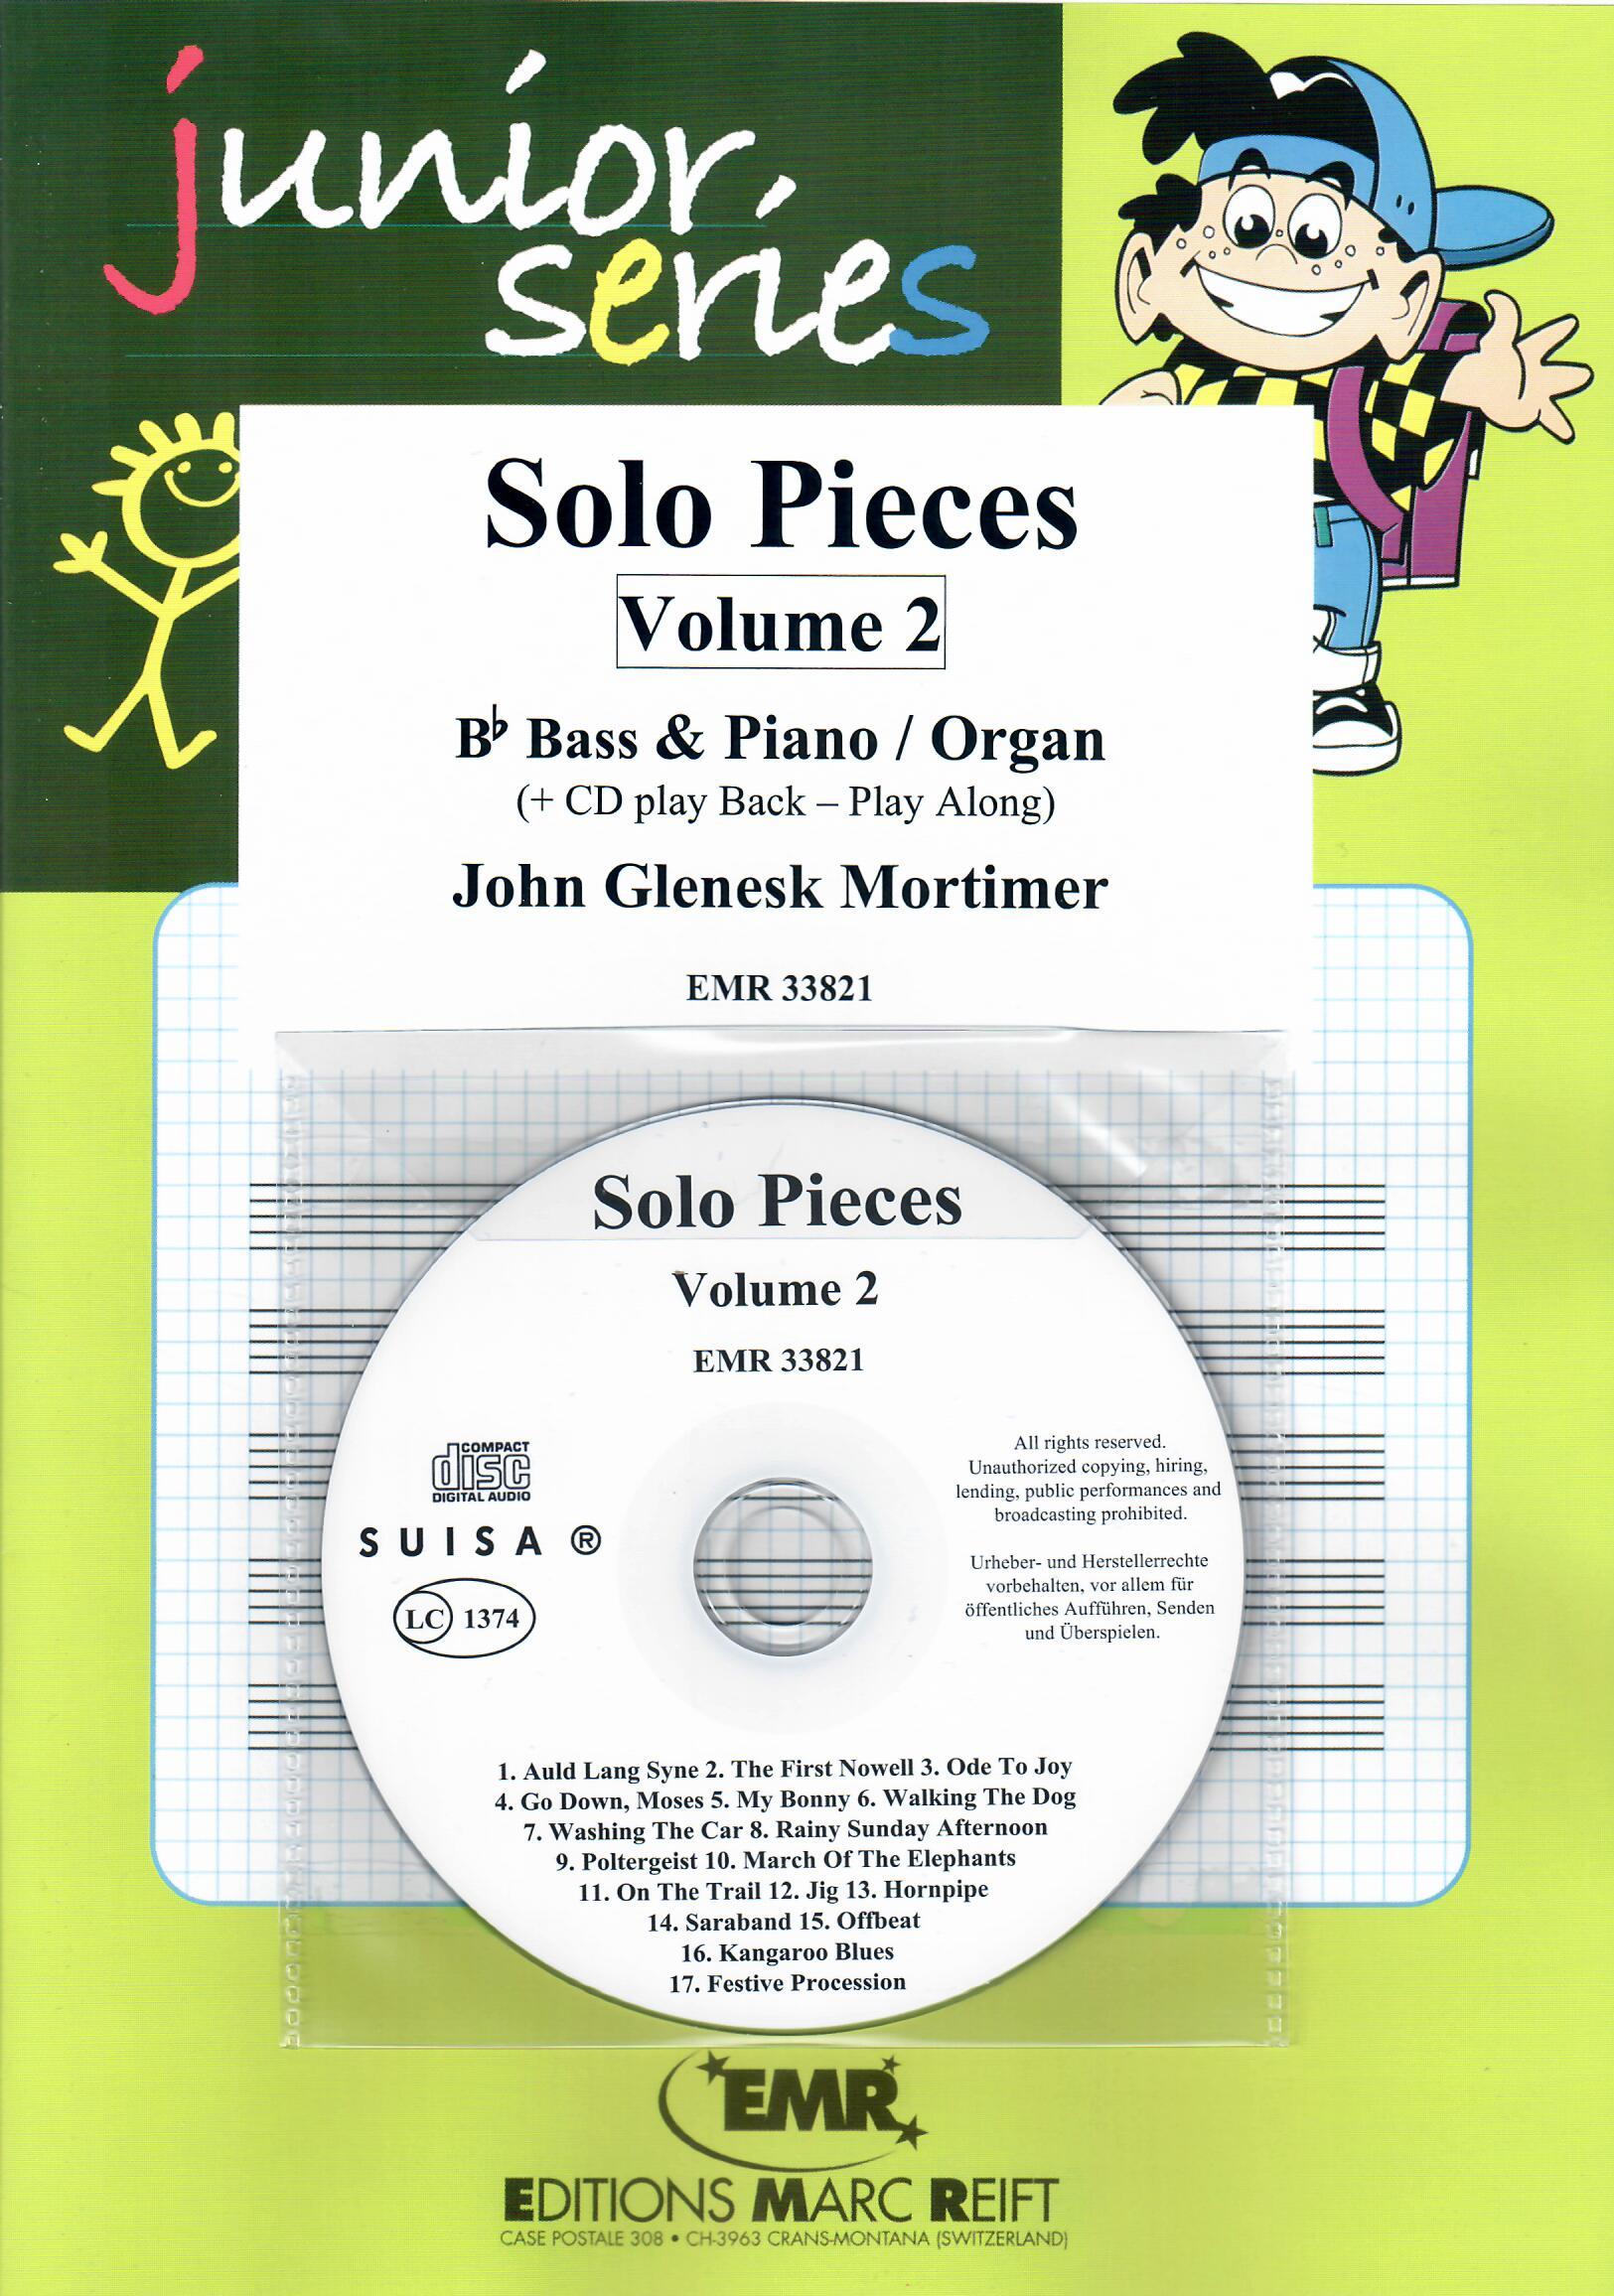 SOLO PIECES VOL. 2, SOLOS - E♭. Bass